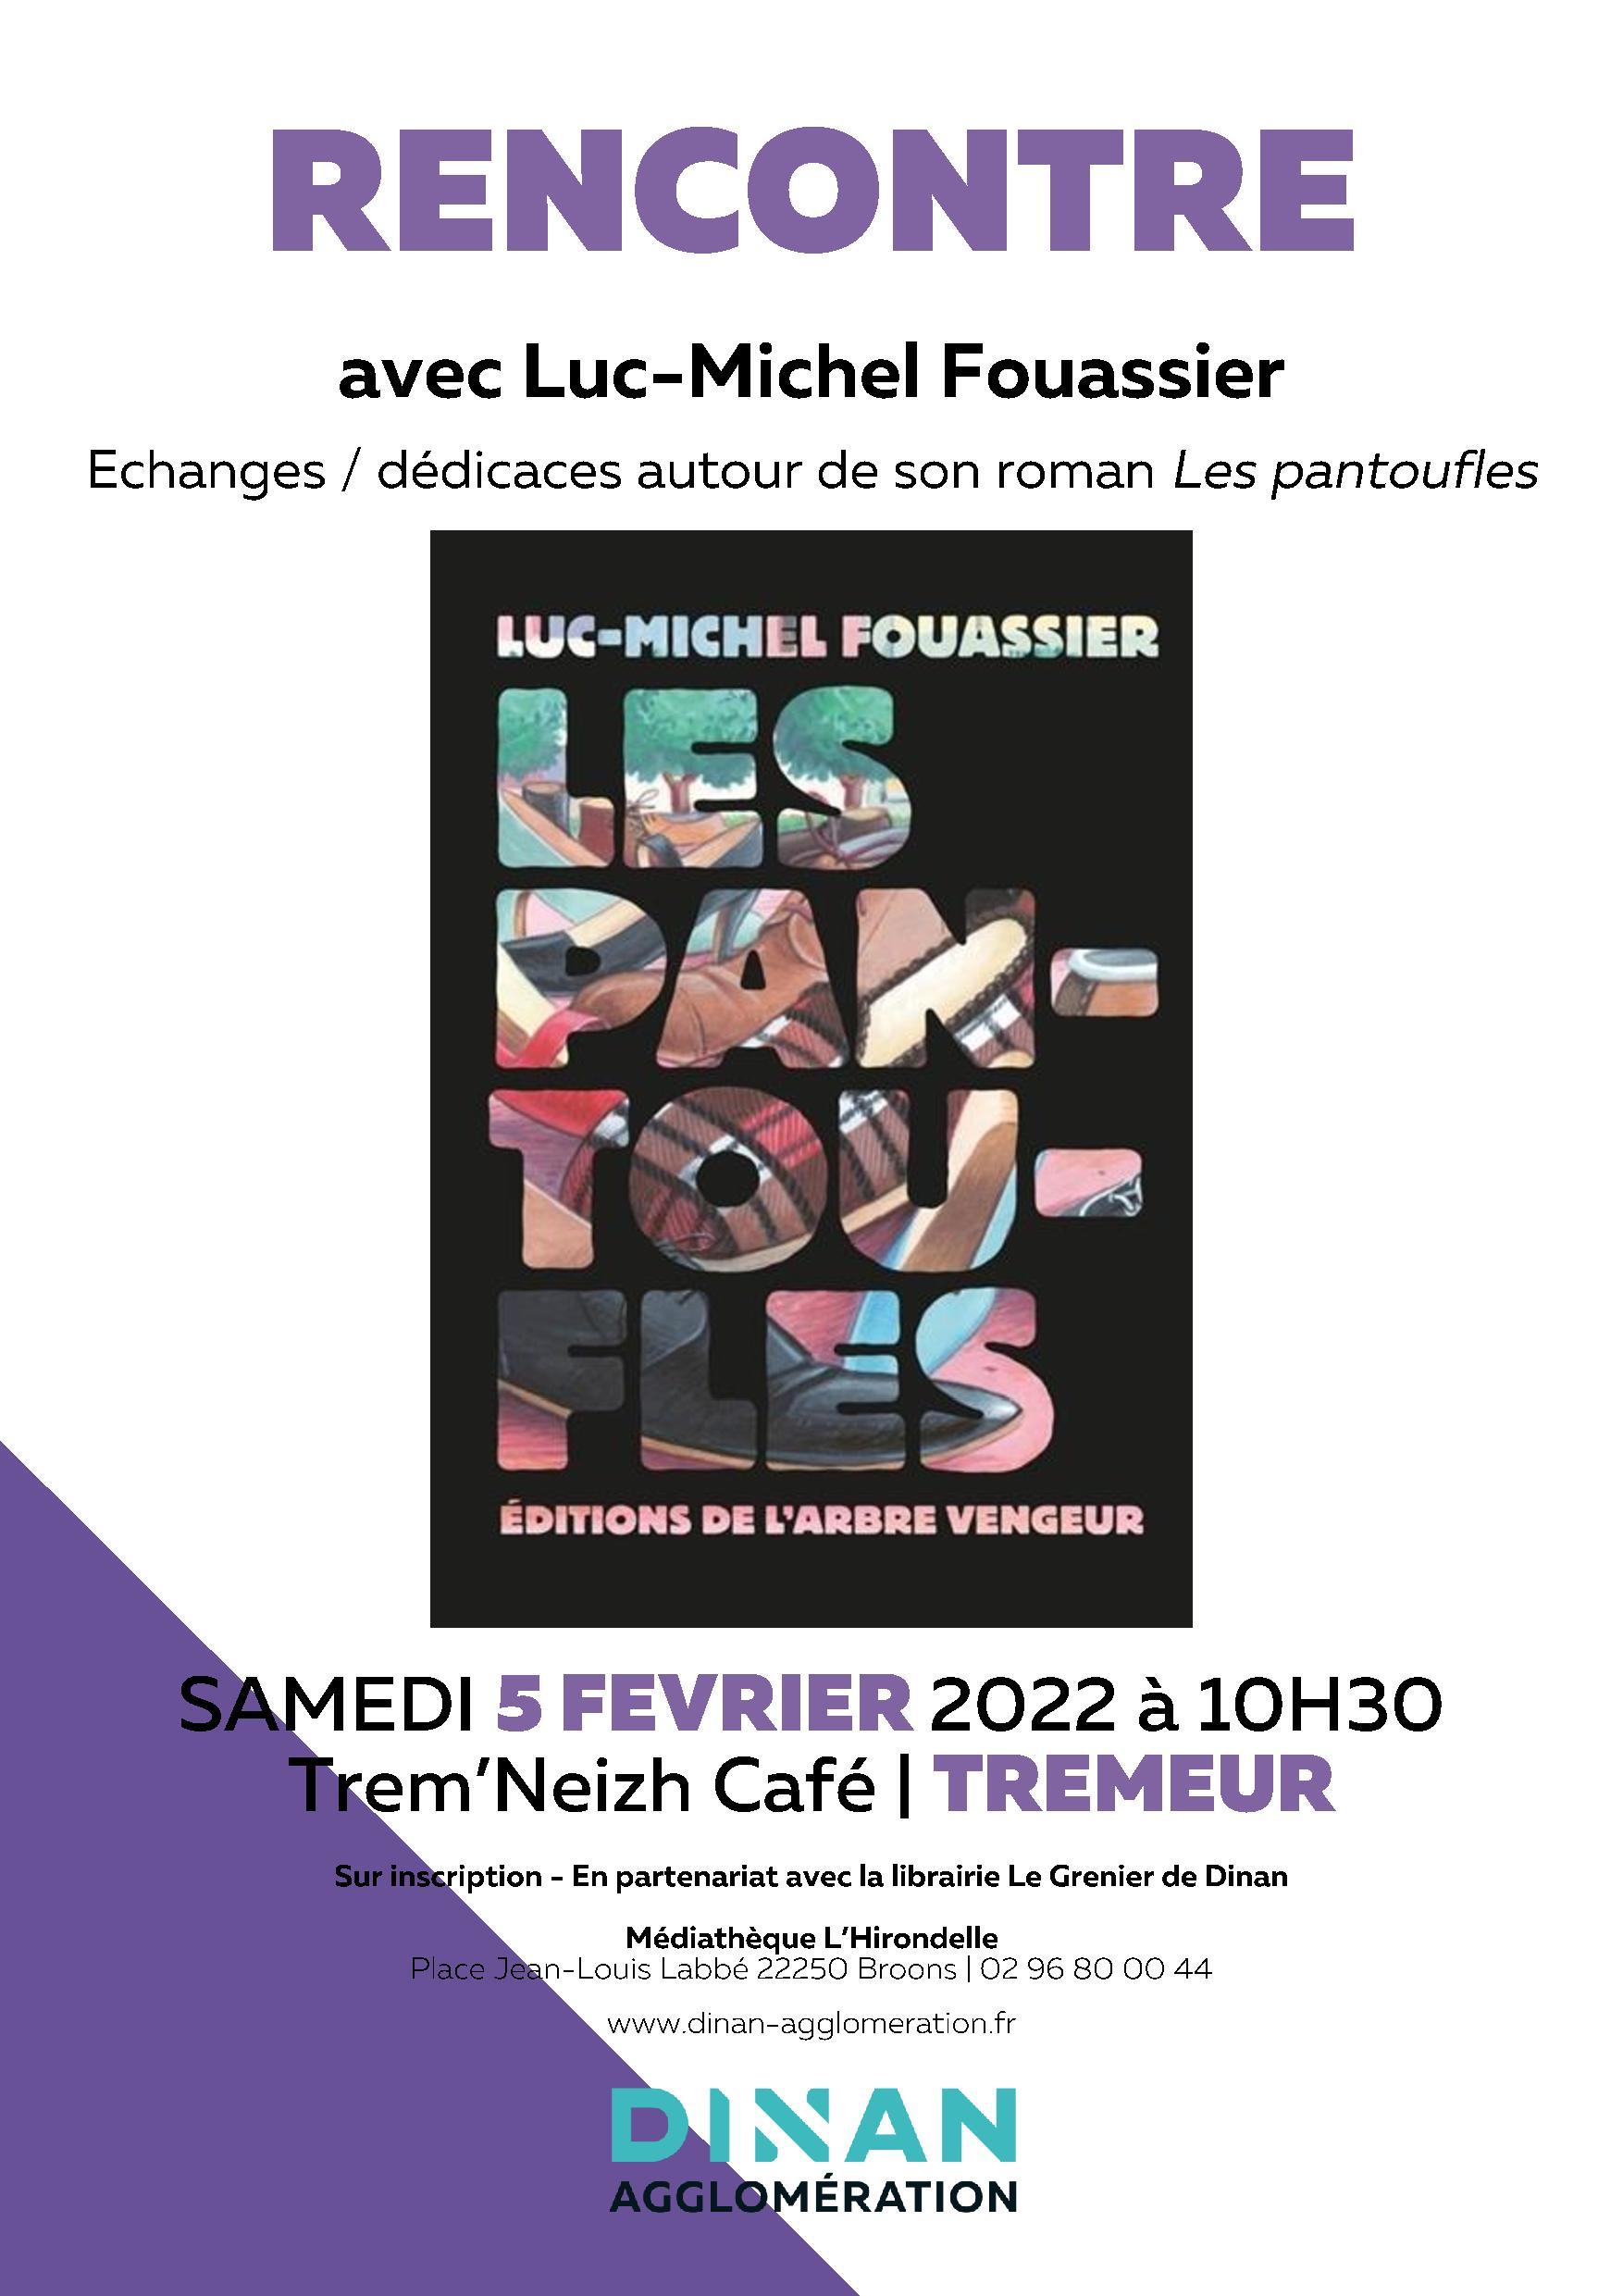 Rencontre avec Luc-Michel Fouassier